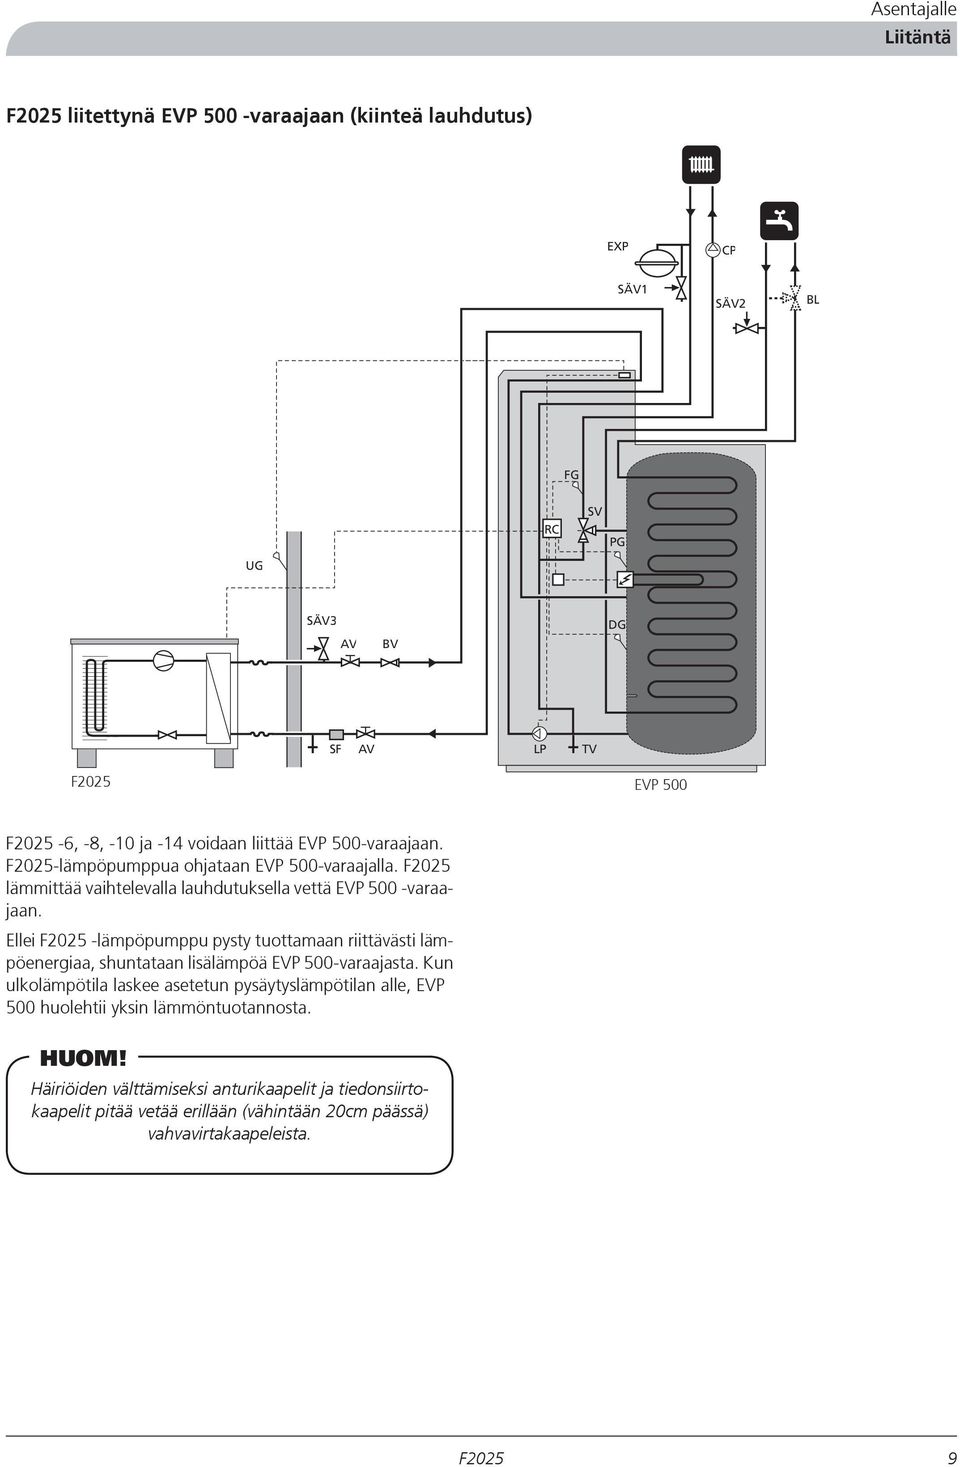 Ellei -lämpöpumppu pysty tuottamaan riittävästi lämpöenergiaa, shuntataan lisälämpöä EVP 500-varaajasta.